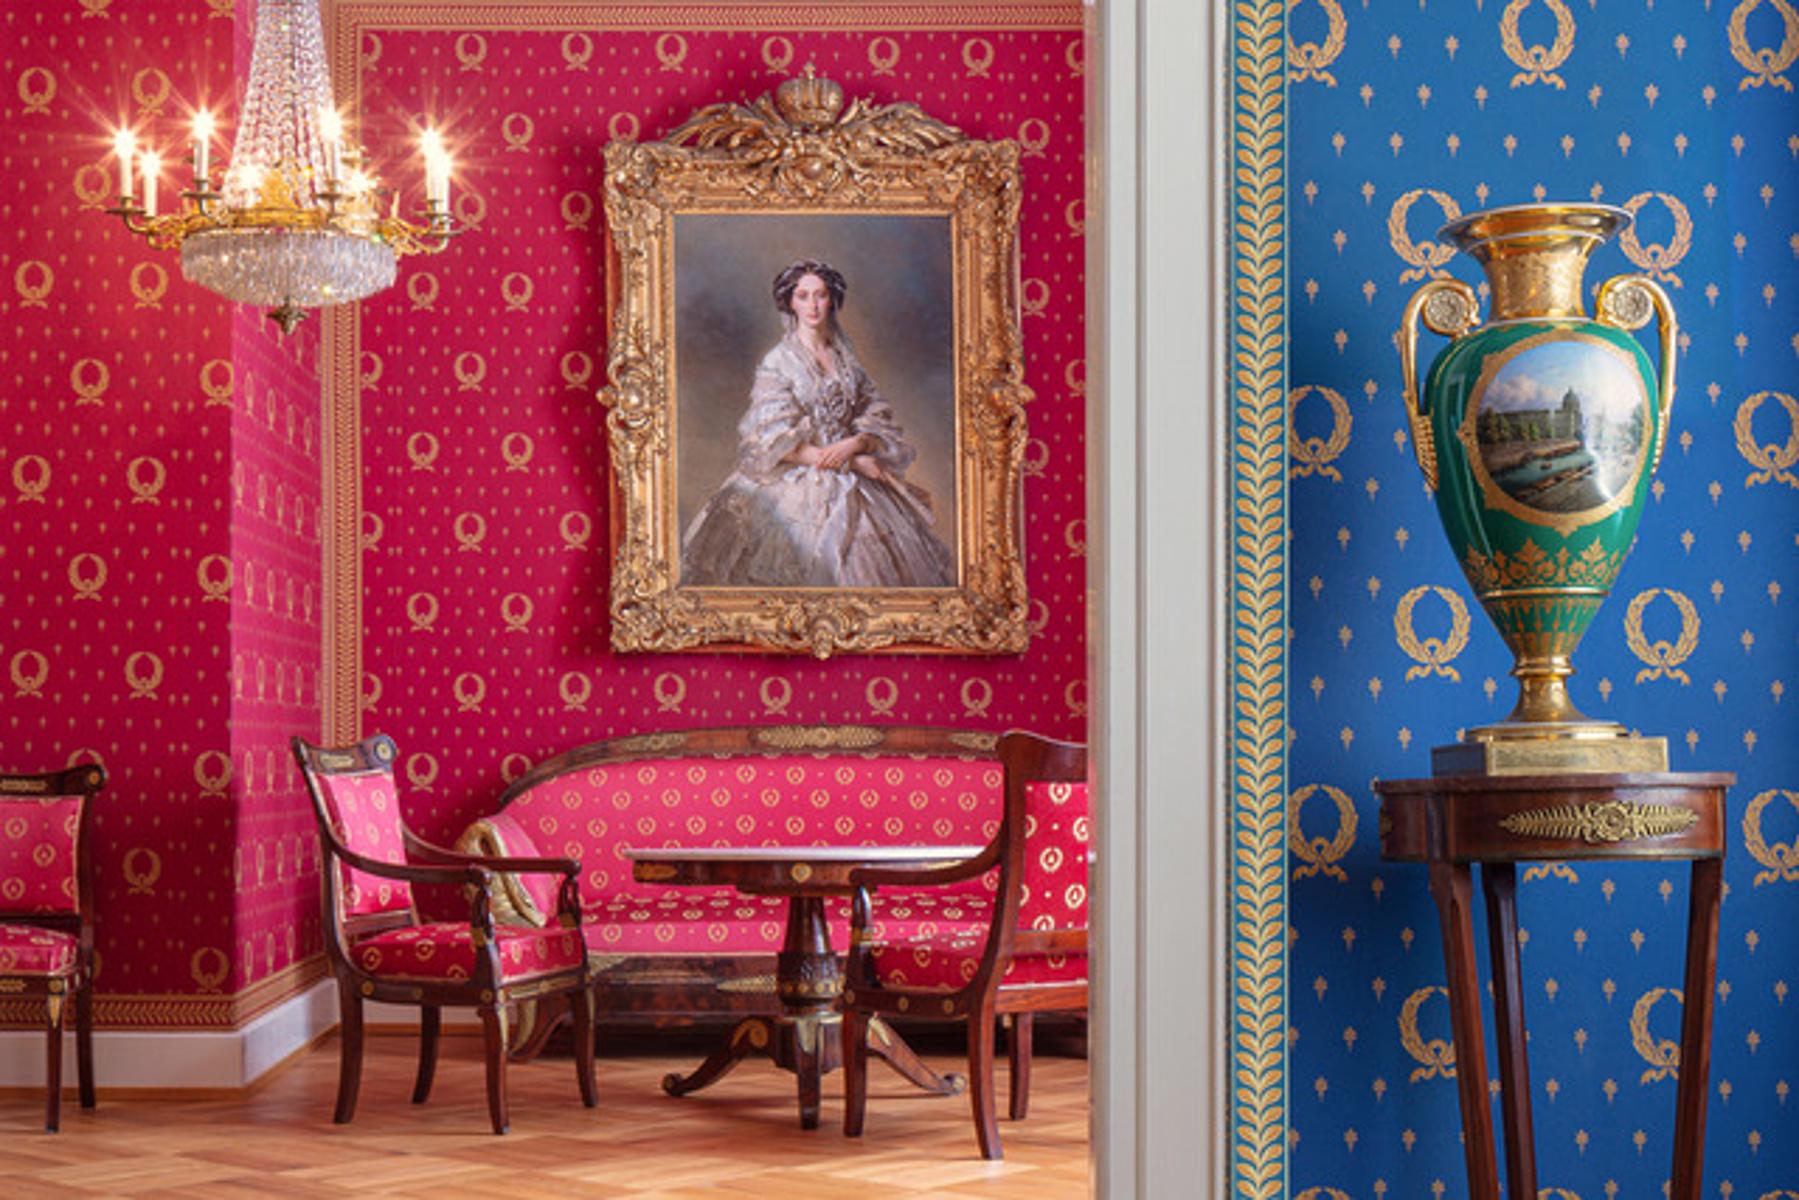 Blick durch einen Türrahmen, rechts blaue  Tapete mit goldenem Muster, davon eine hohe Vase auf einem schmalen Tisch. Im Raum dahinter eine Sitzgruppe aus Sofa und zwei  Stühlen, an der Wand rote Tapete und historisches Portrait einer Dame.